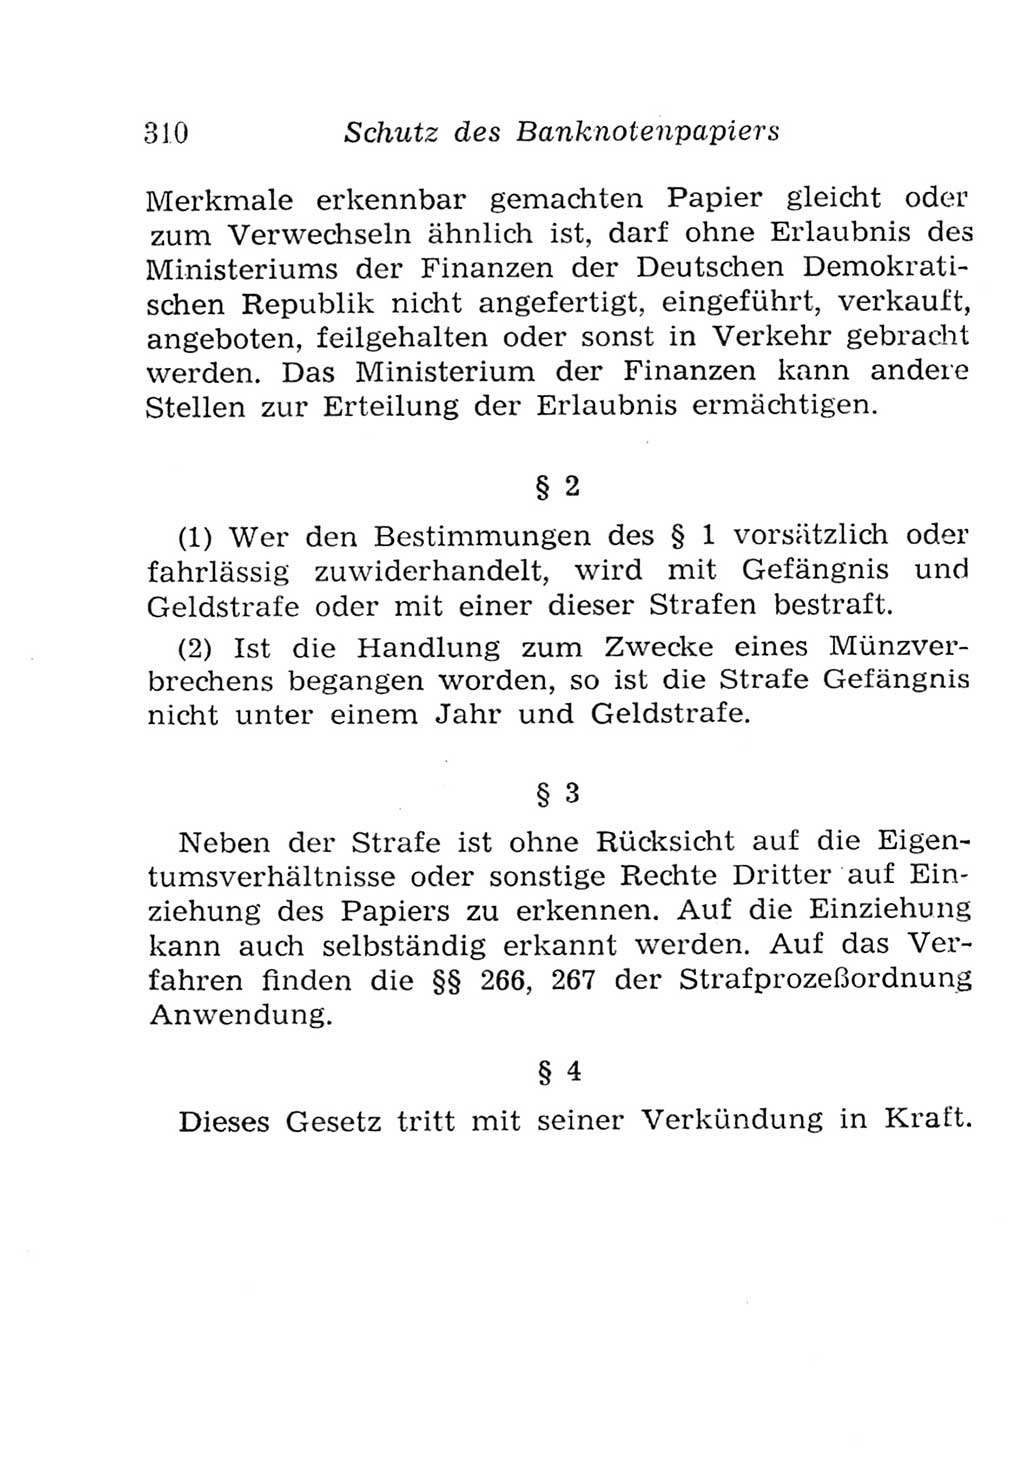 Strafgesetzbuch (StGB) und andere Strafgesetze [Deutsche Demokratische Republik (DDR)] 1957, Seite 310 (StGB Strafges. DDR 1957, S. 310)